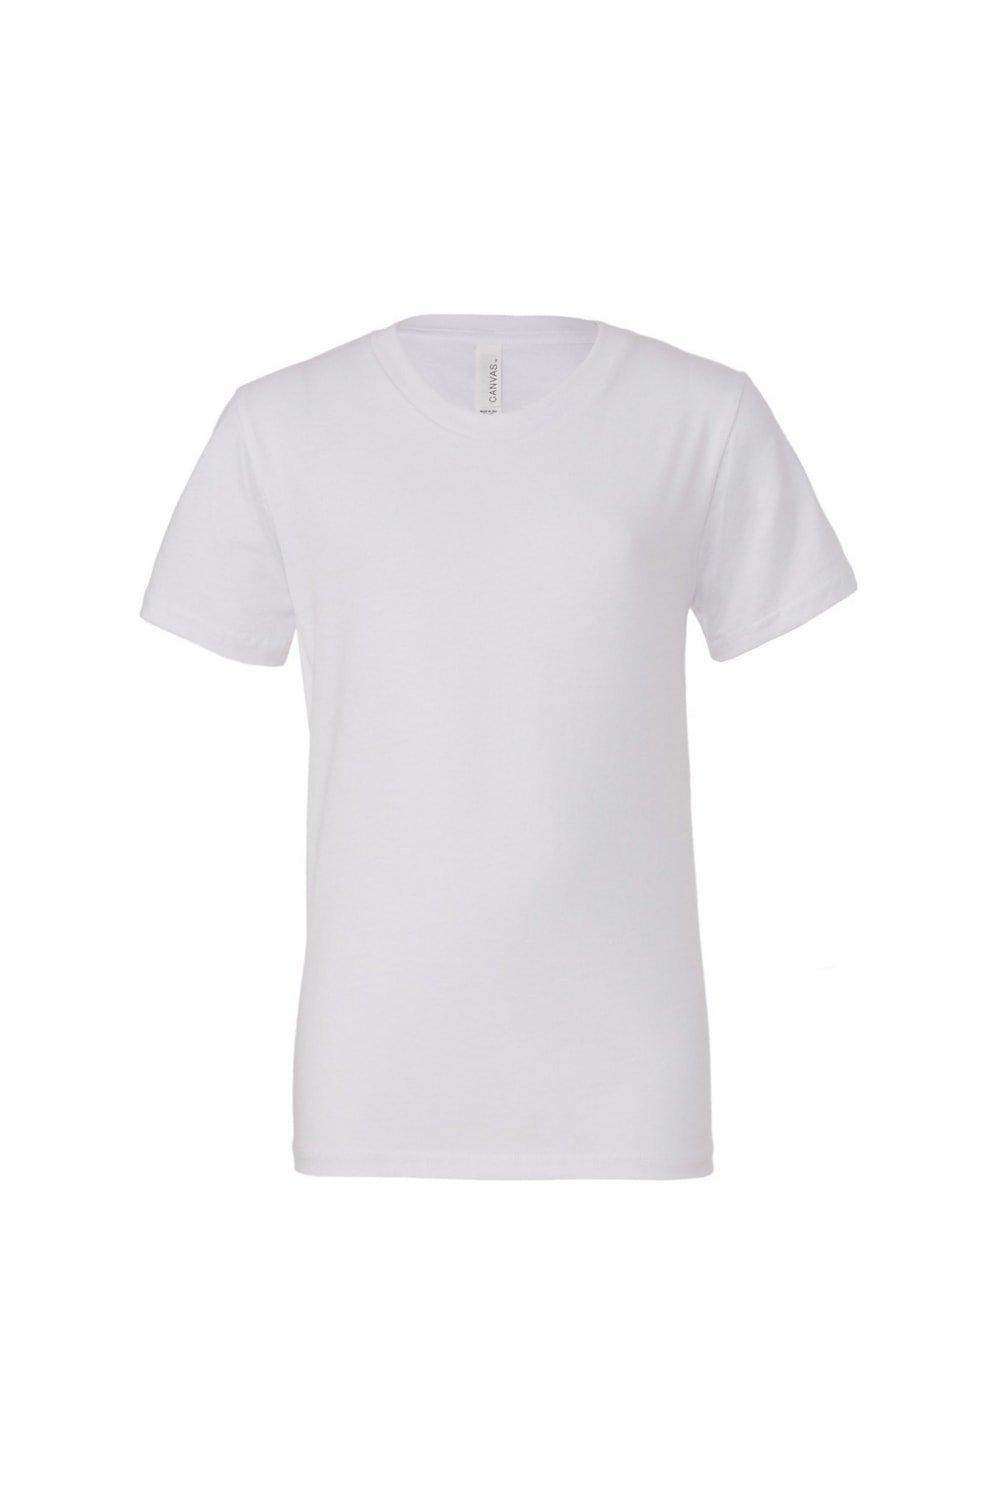 Молодежная футболка из джерси с короткими рукавами Bella + Canvas, белый запасная стеклянная трубка vaporlinda для vgod емкость для фокусов прозрачный стеклянный резервуар розничная торговля